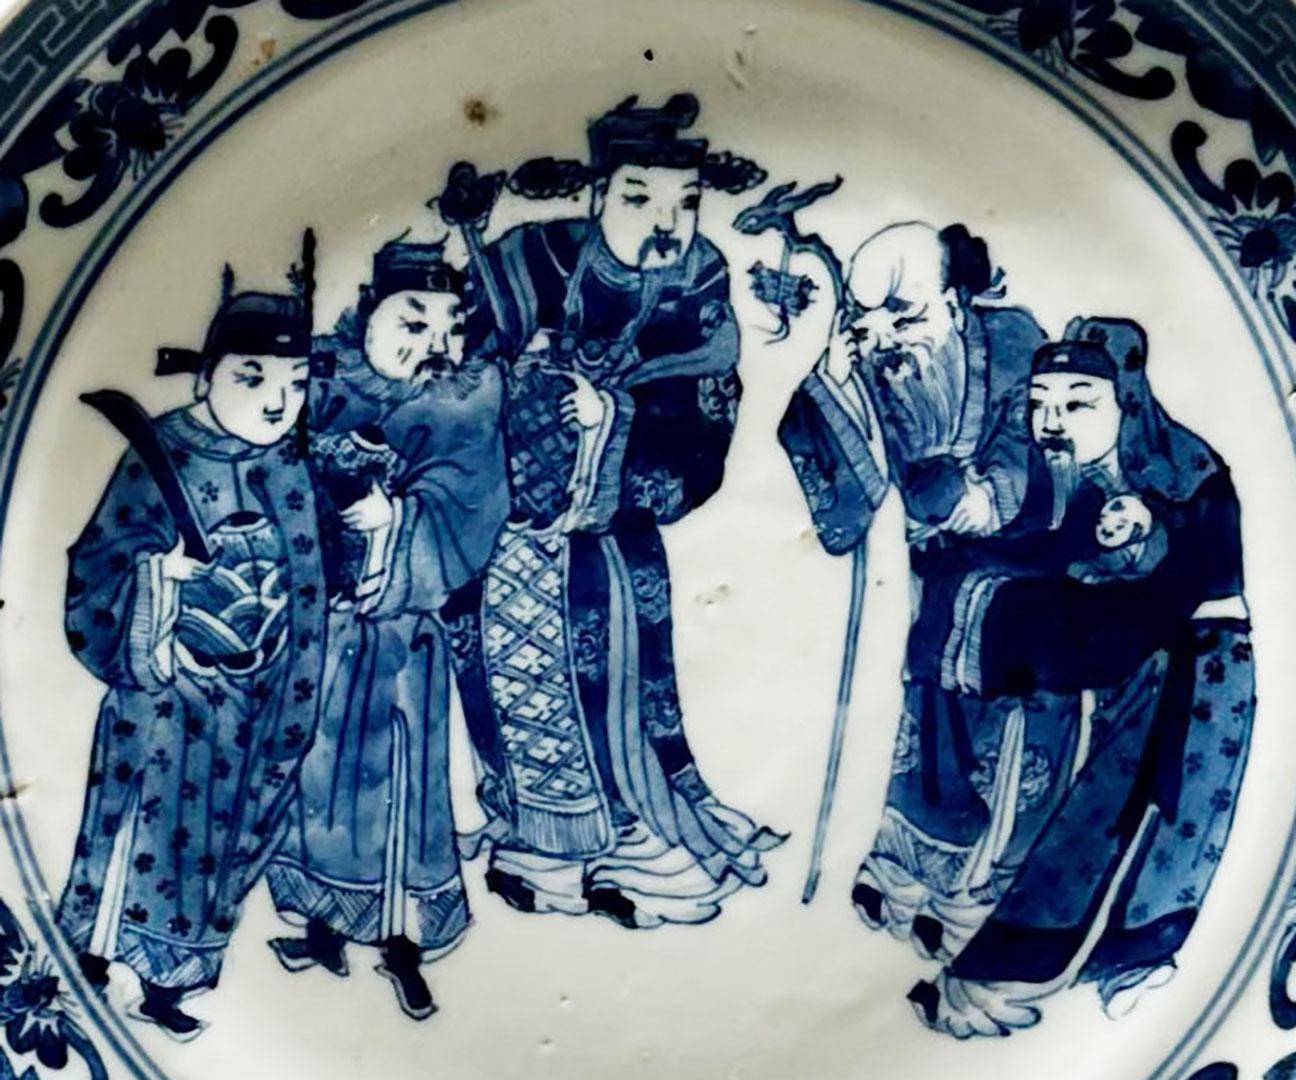 Assiette chinoise en bleu et blanc du début du XIXe siècle représentant cinq hommes nobles et une magnifique bordure de chauves-souris et de clés grecques.